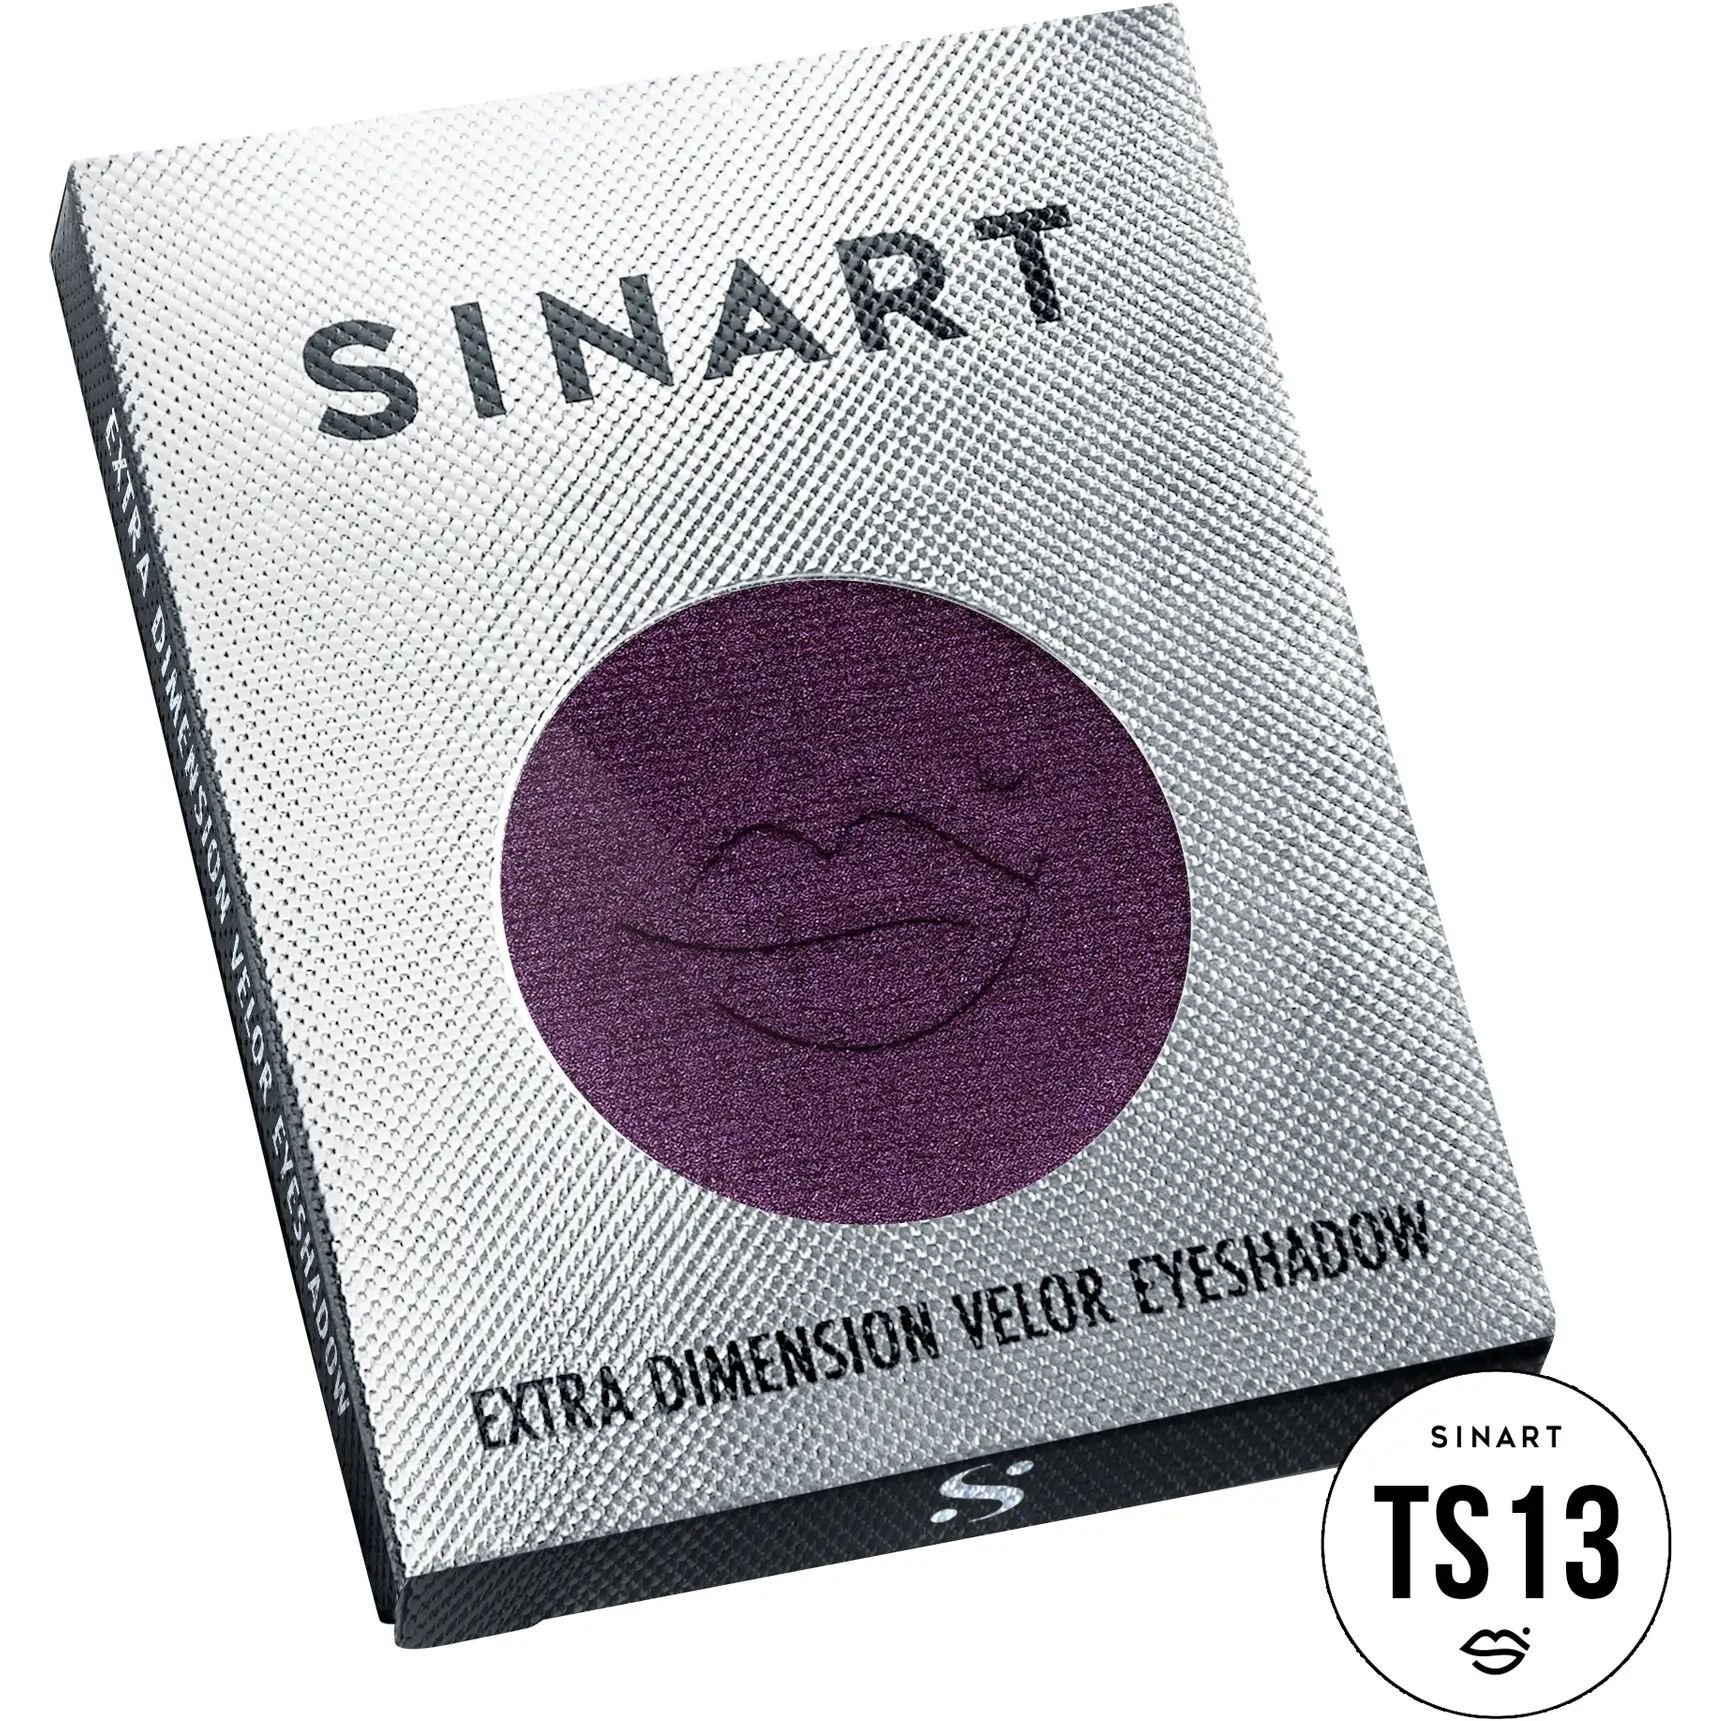 Прессованные тени для век Sinart TS13 Extra Dimension Velor Eyeshadow - фото 3